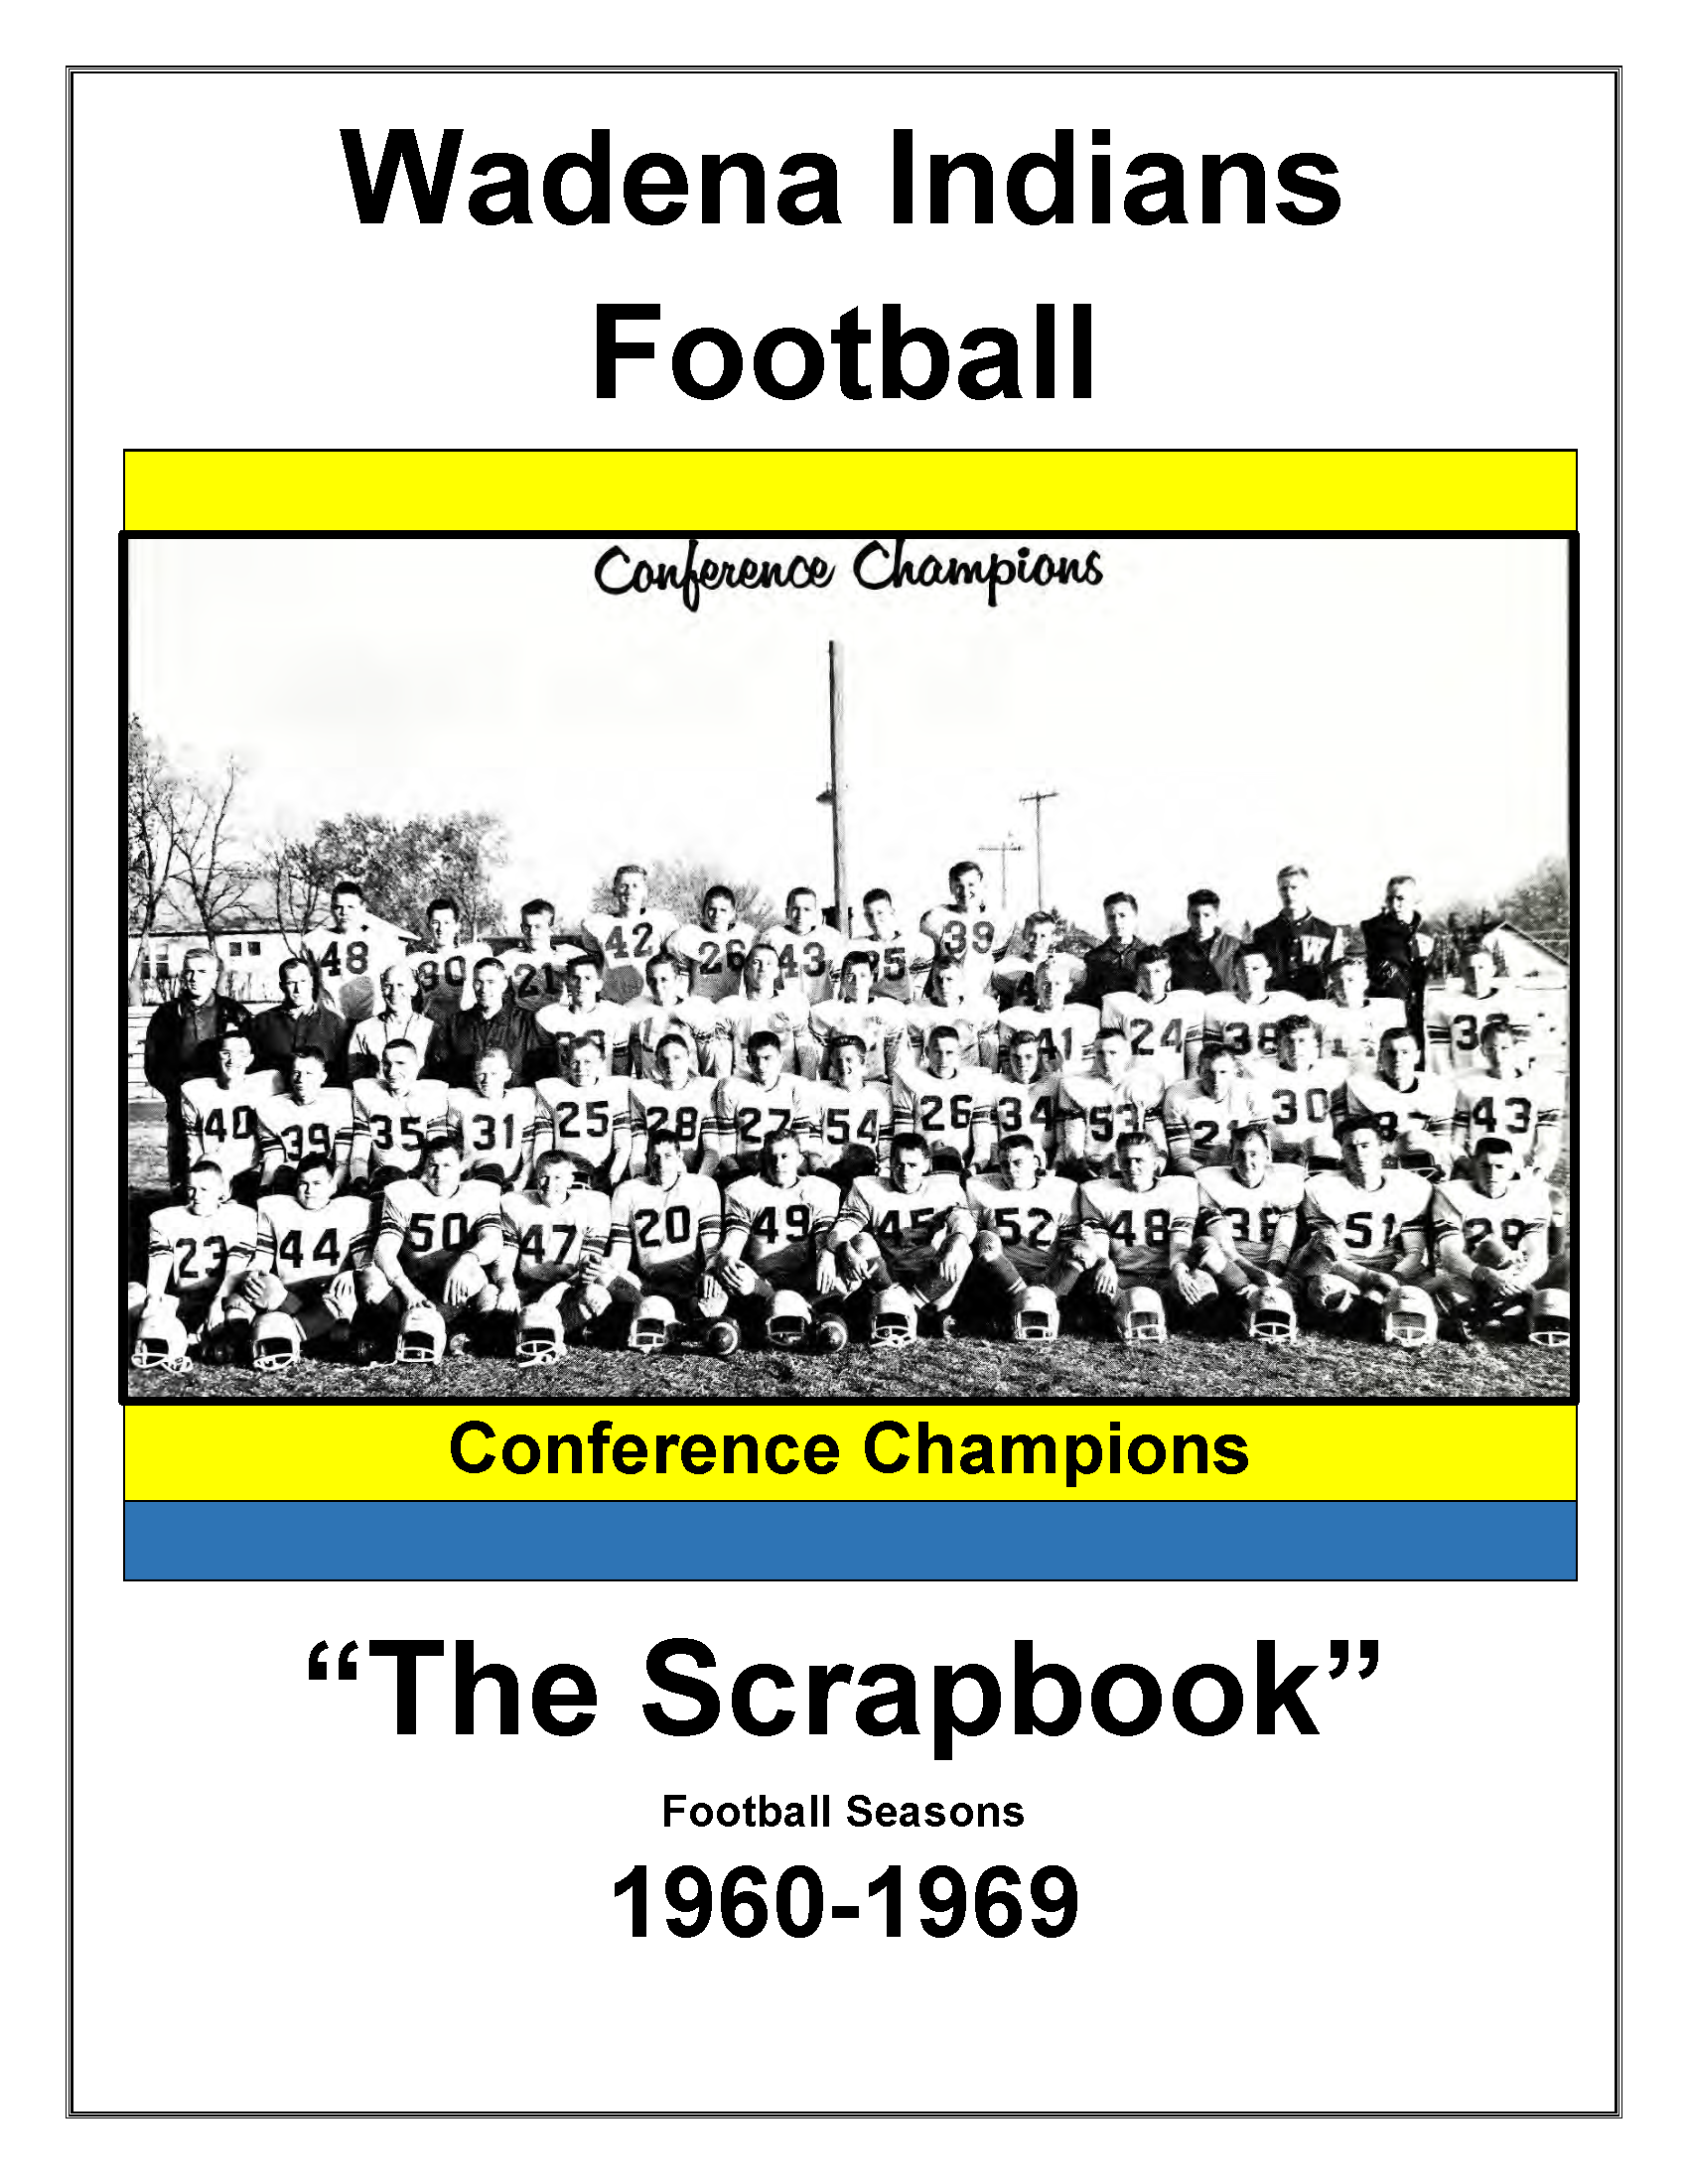 1960-1969 FB scrapbook